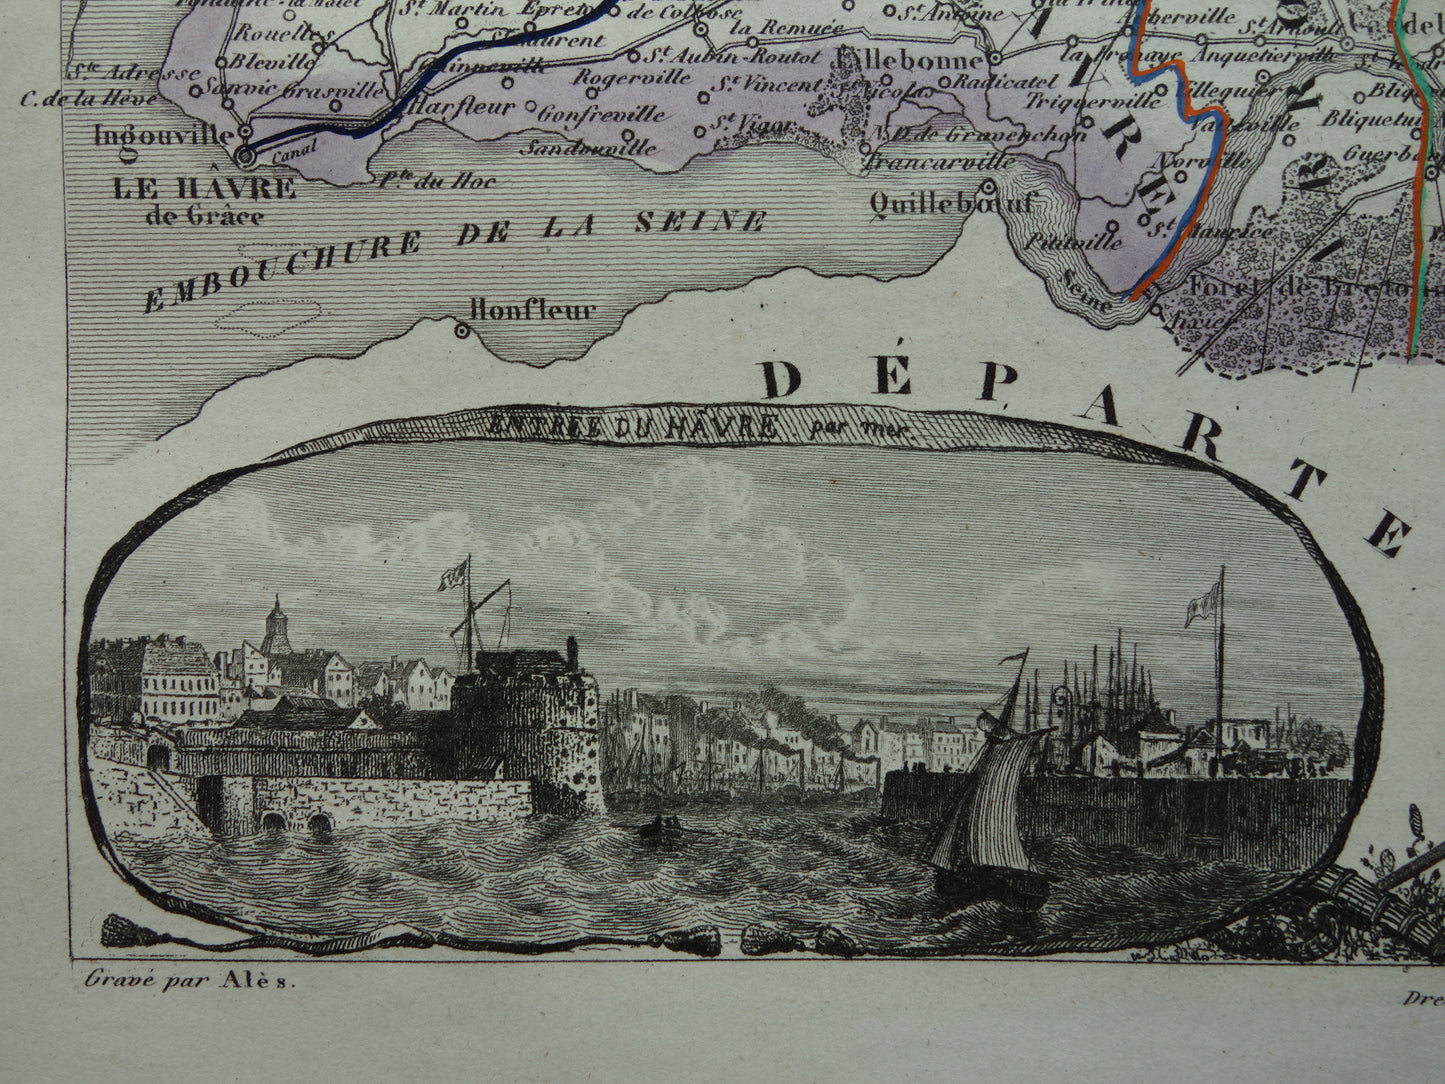 Oude kaart van Seine-Maritime departement in Frankrijk uit 1851 originele antieke landkaart Rouen Le Havre historische kaarten